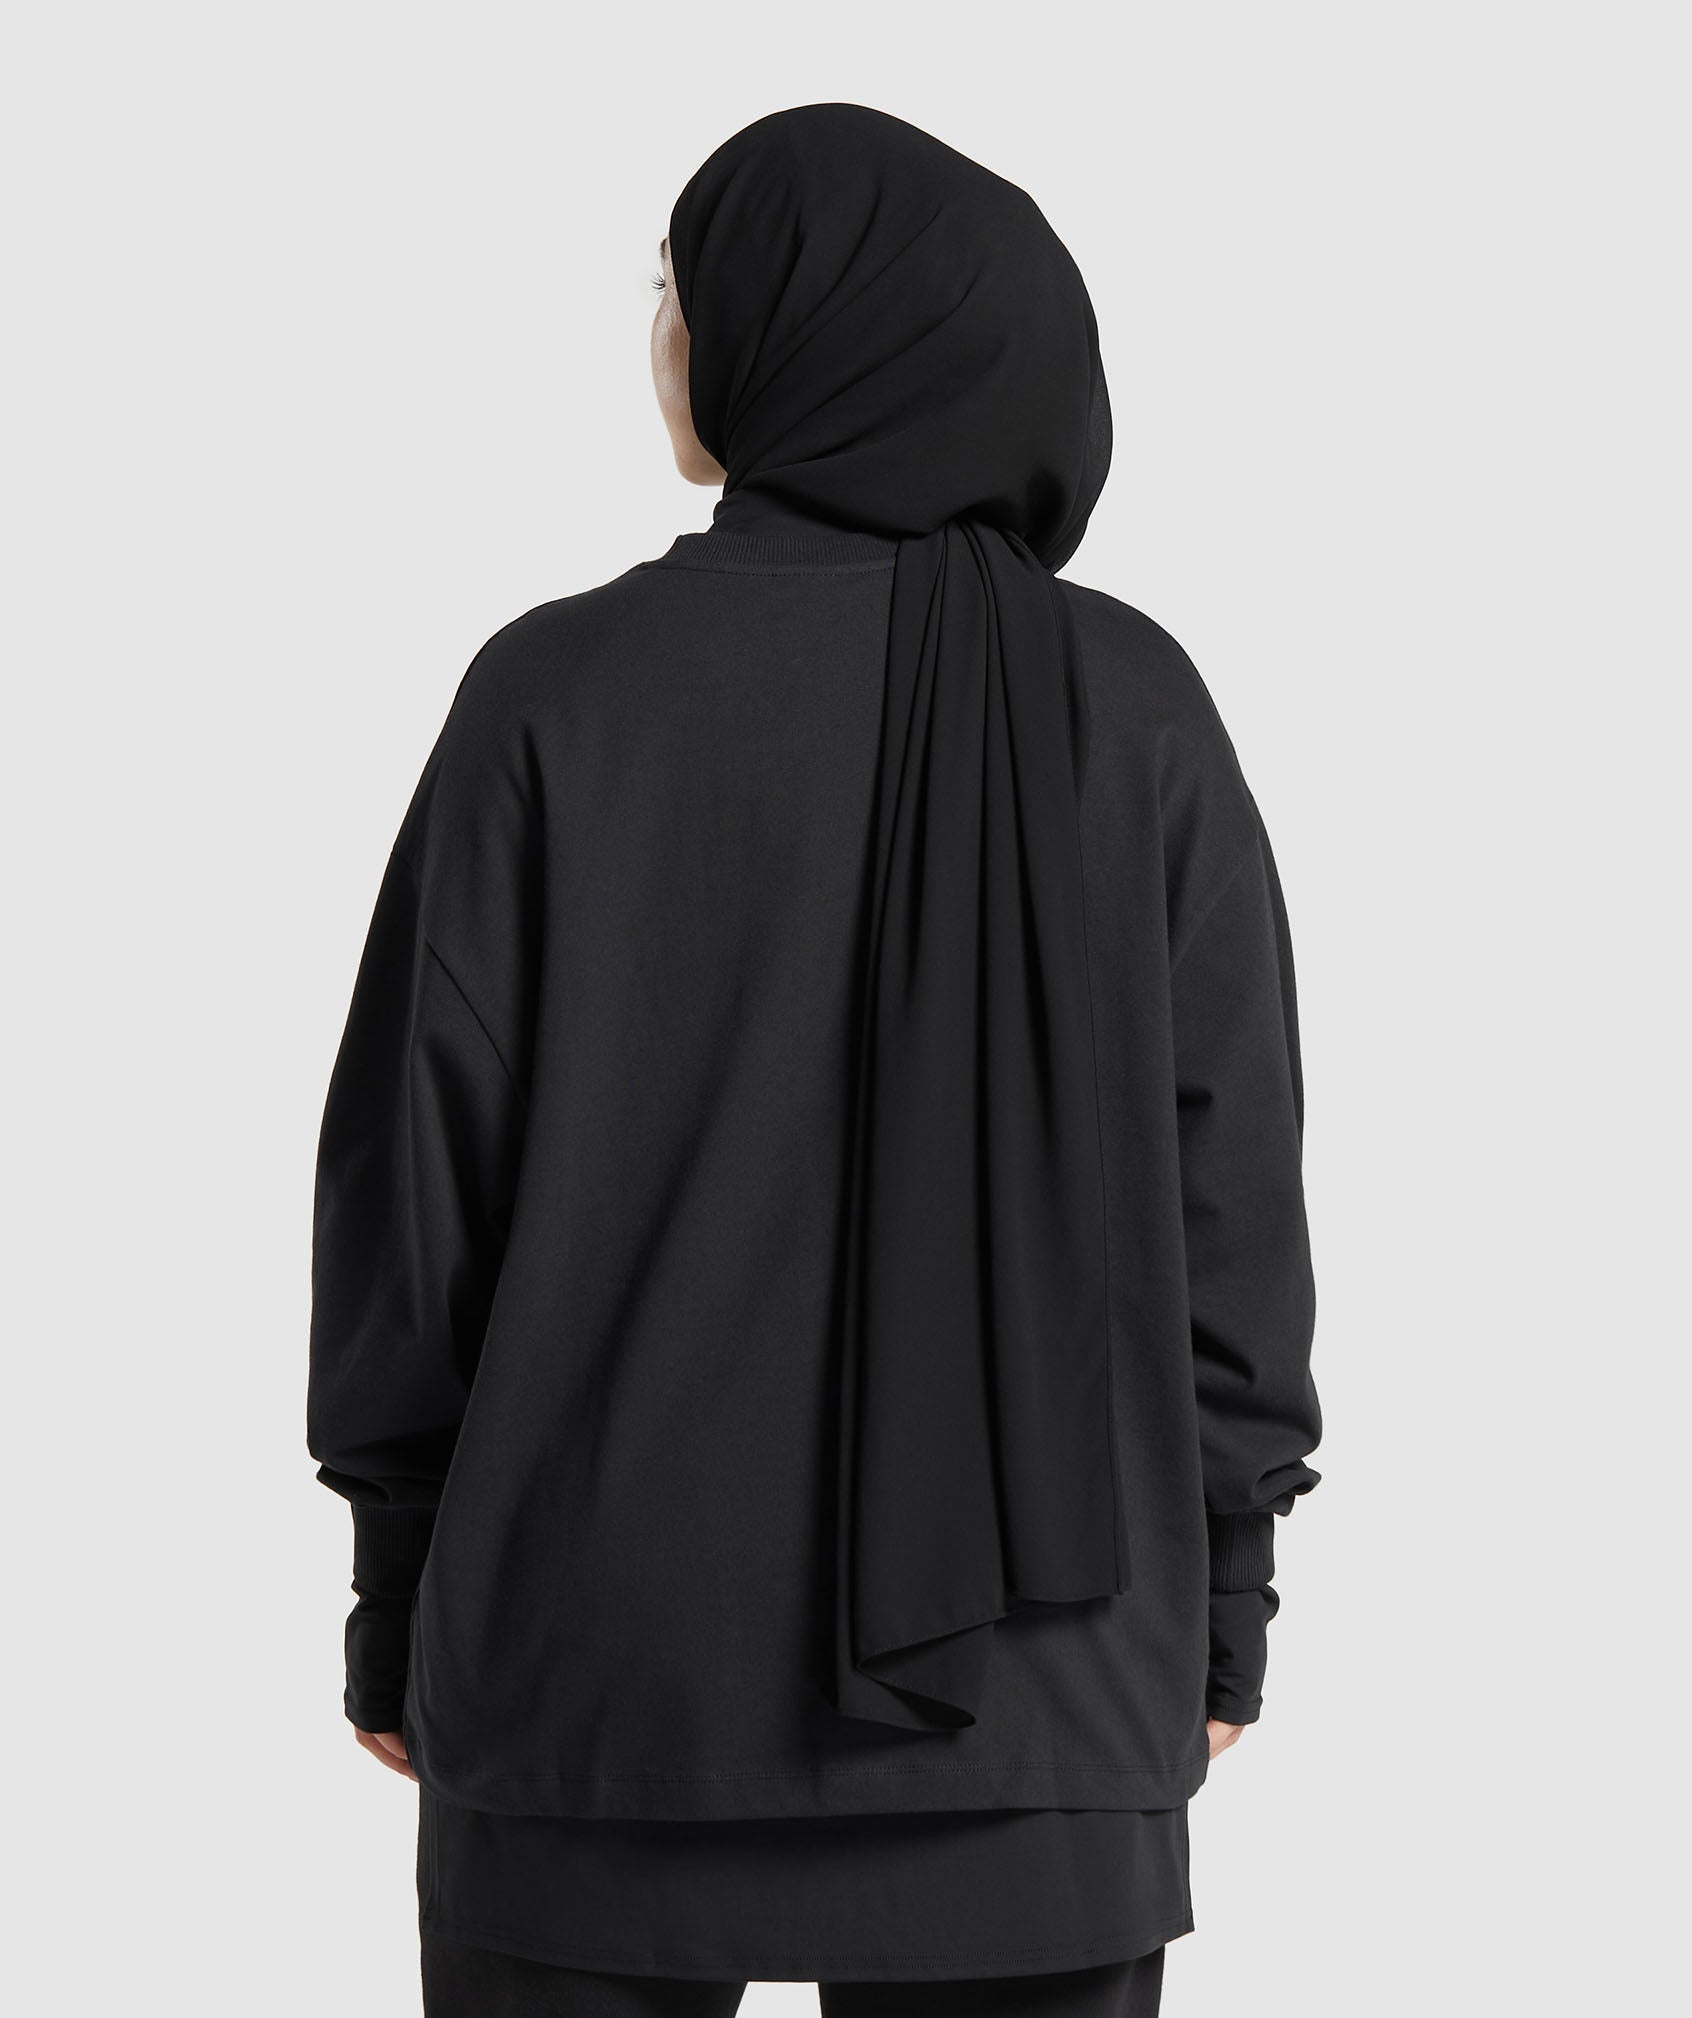 GS X Leana Deeb Oversized Long Sleeve Top in Black - view 2